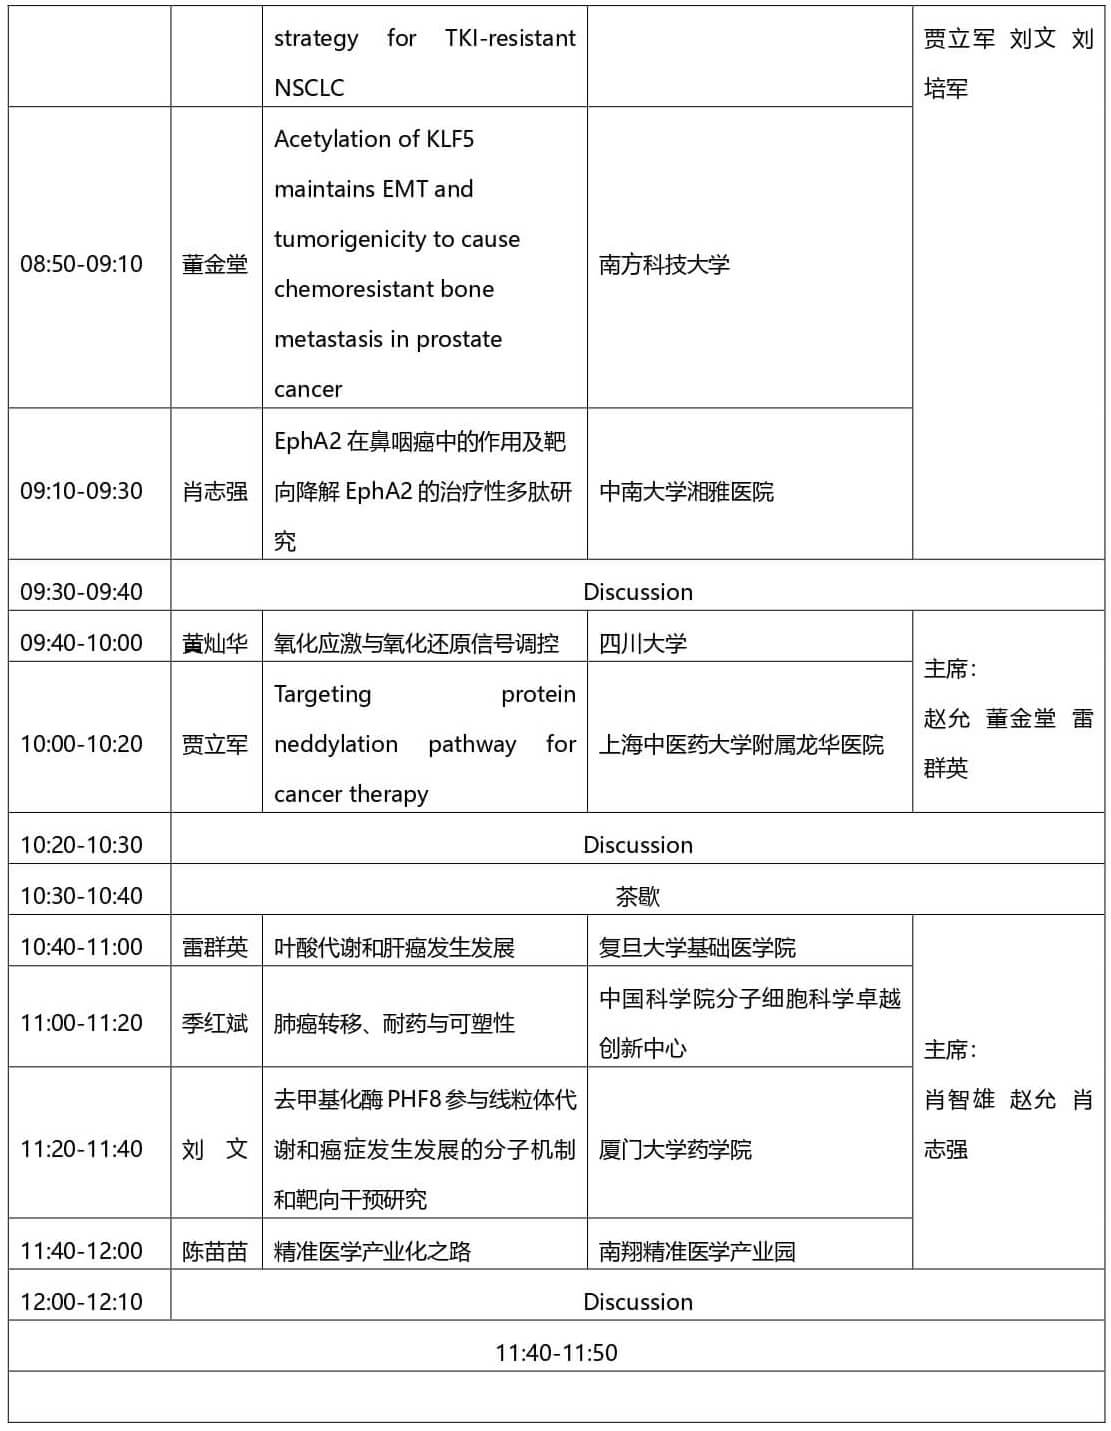 2021第三届上海国际癌症大会